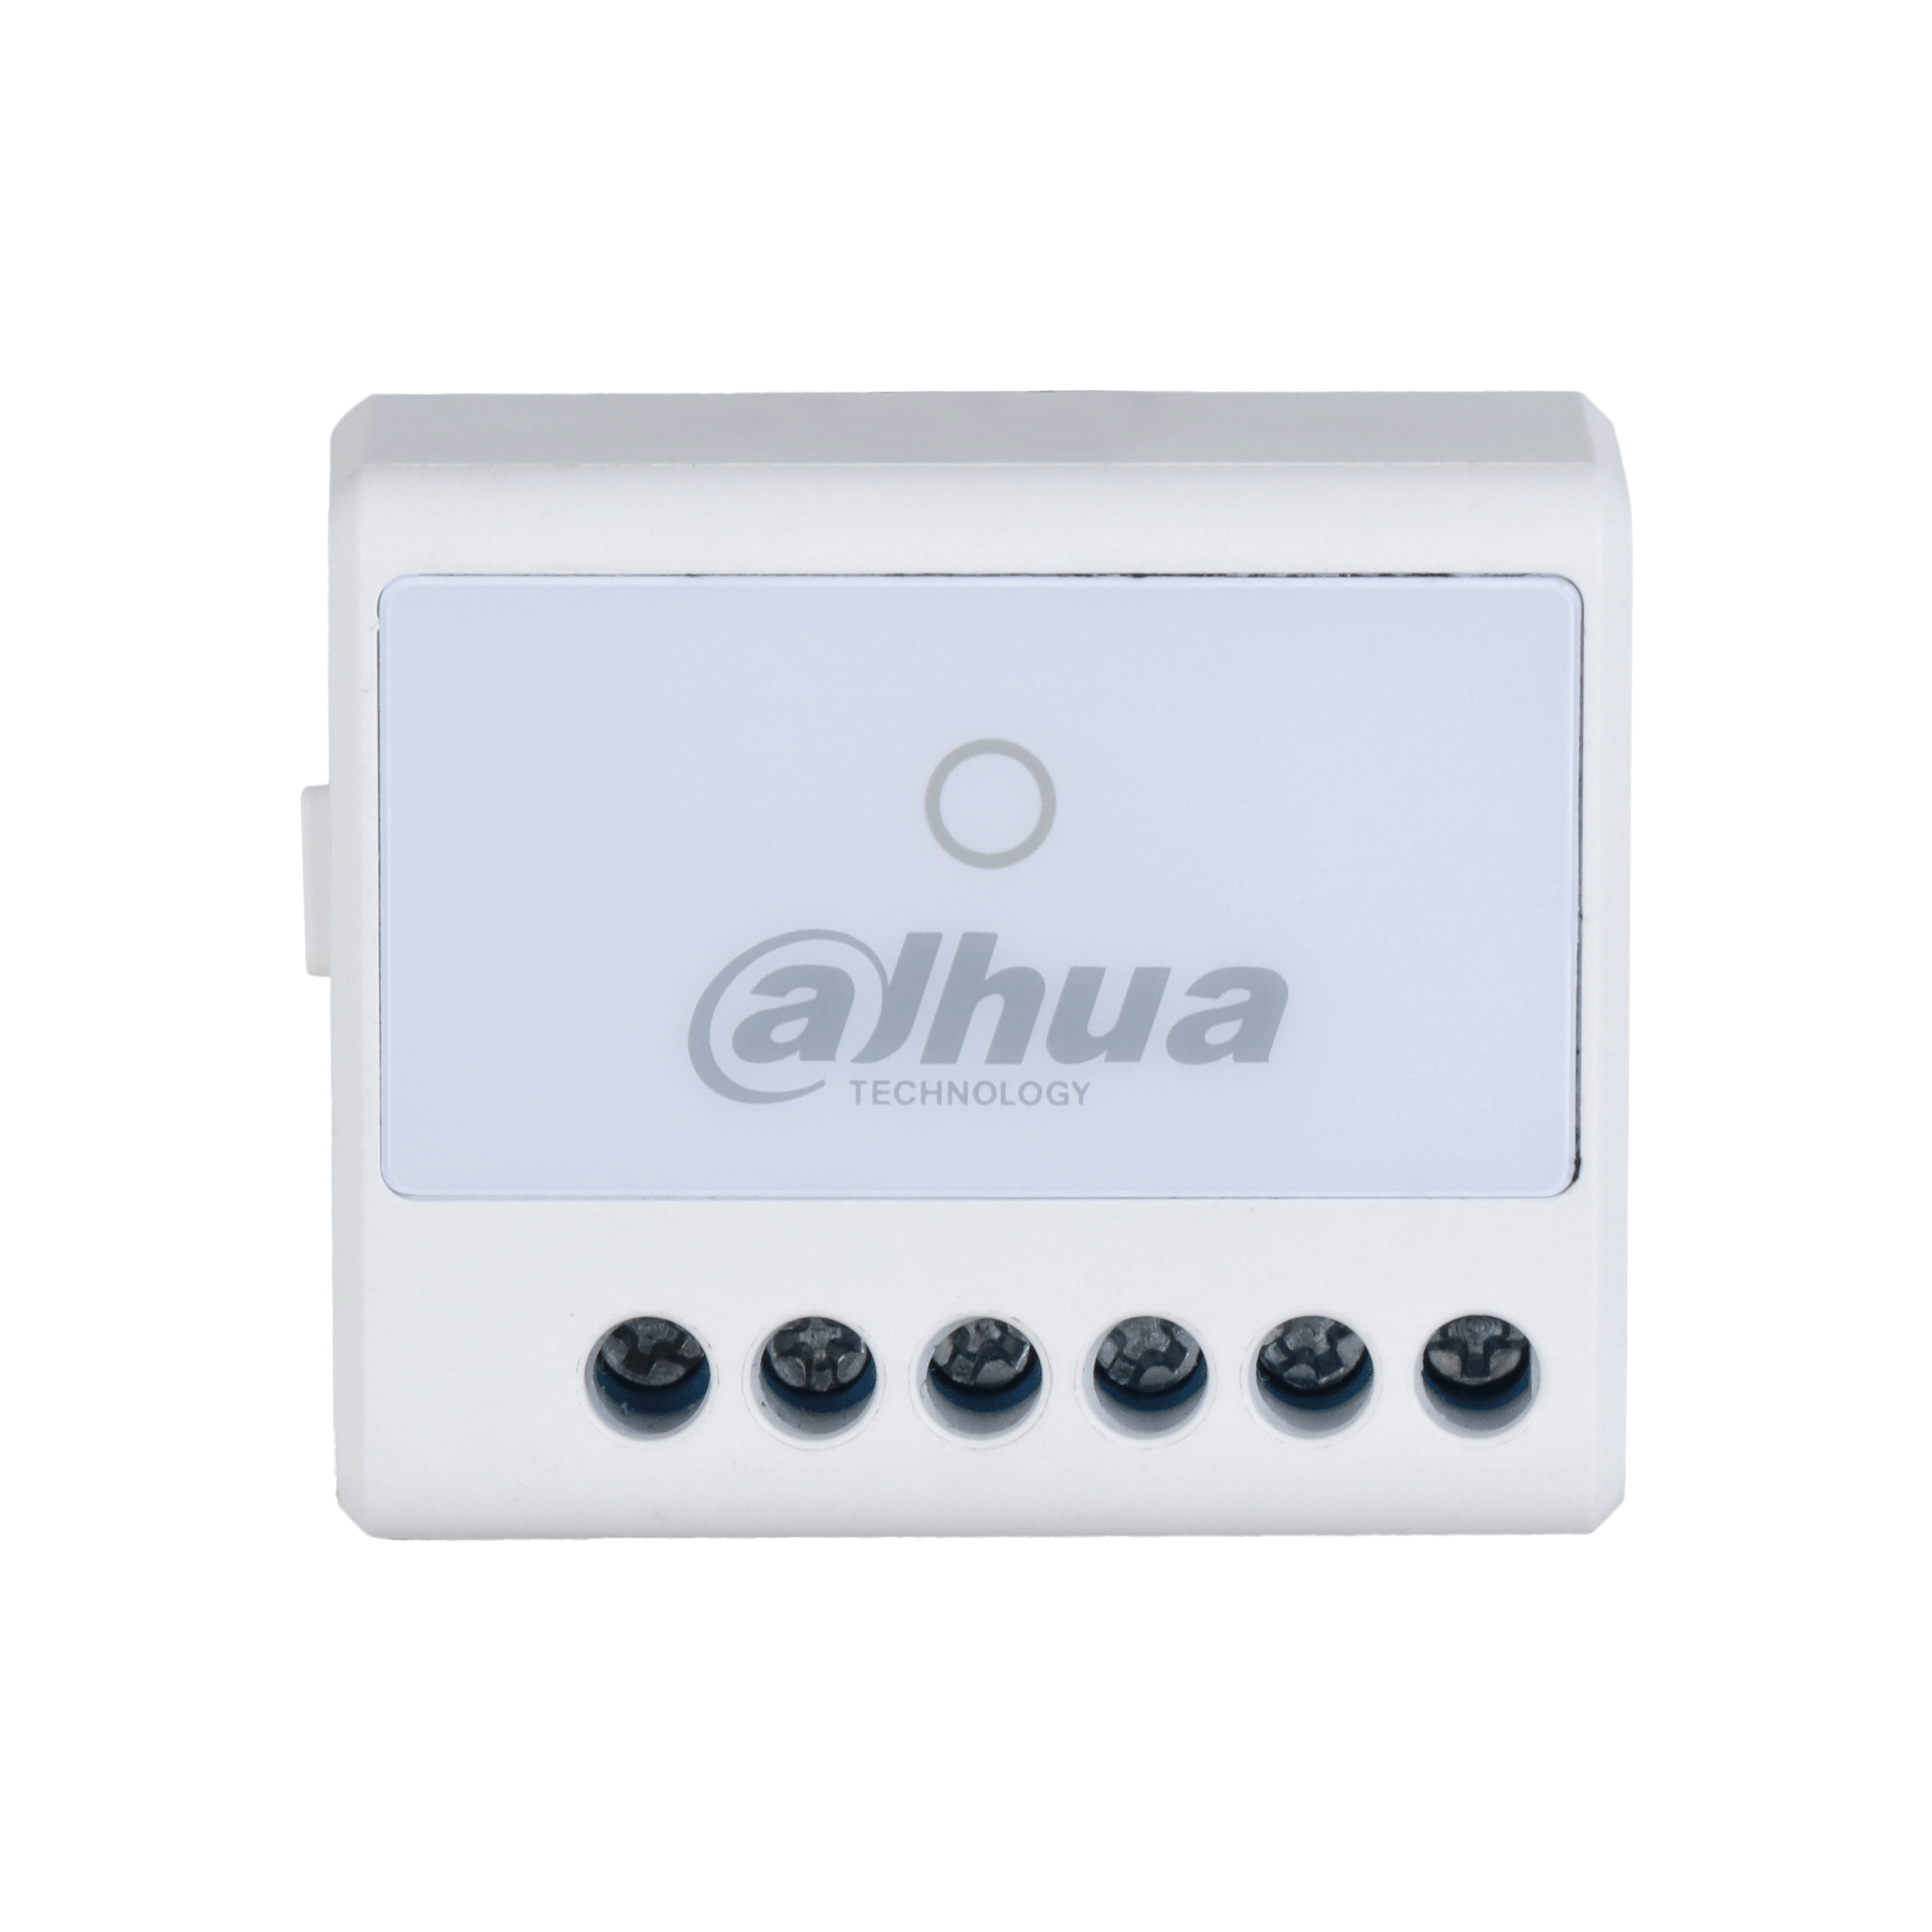 DAHUA ARM7011-W2 Dahua Wireless Relay